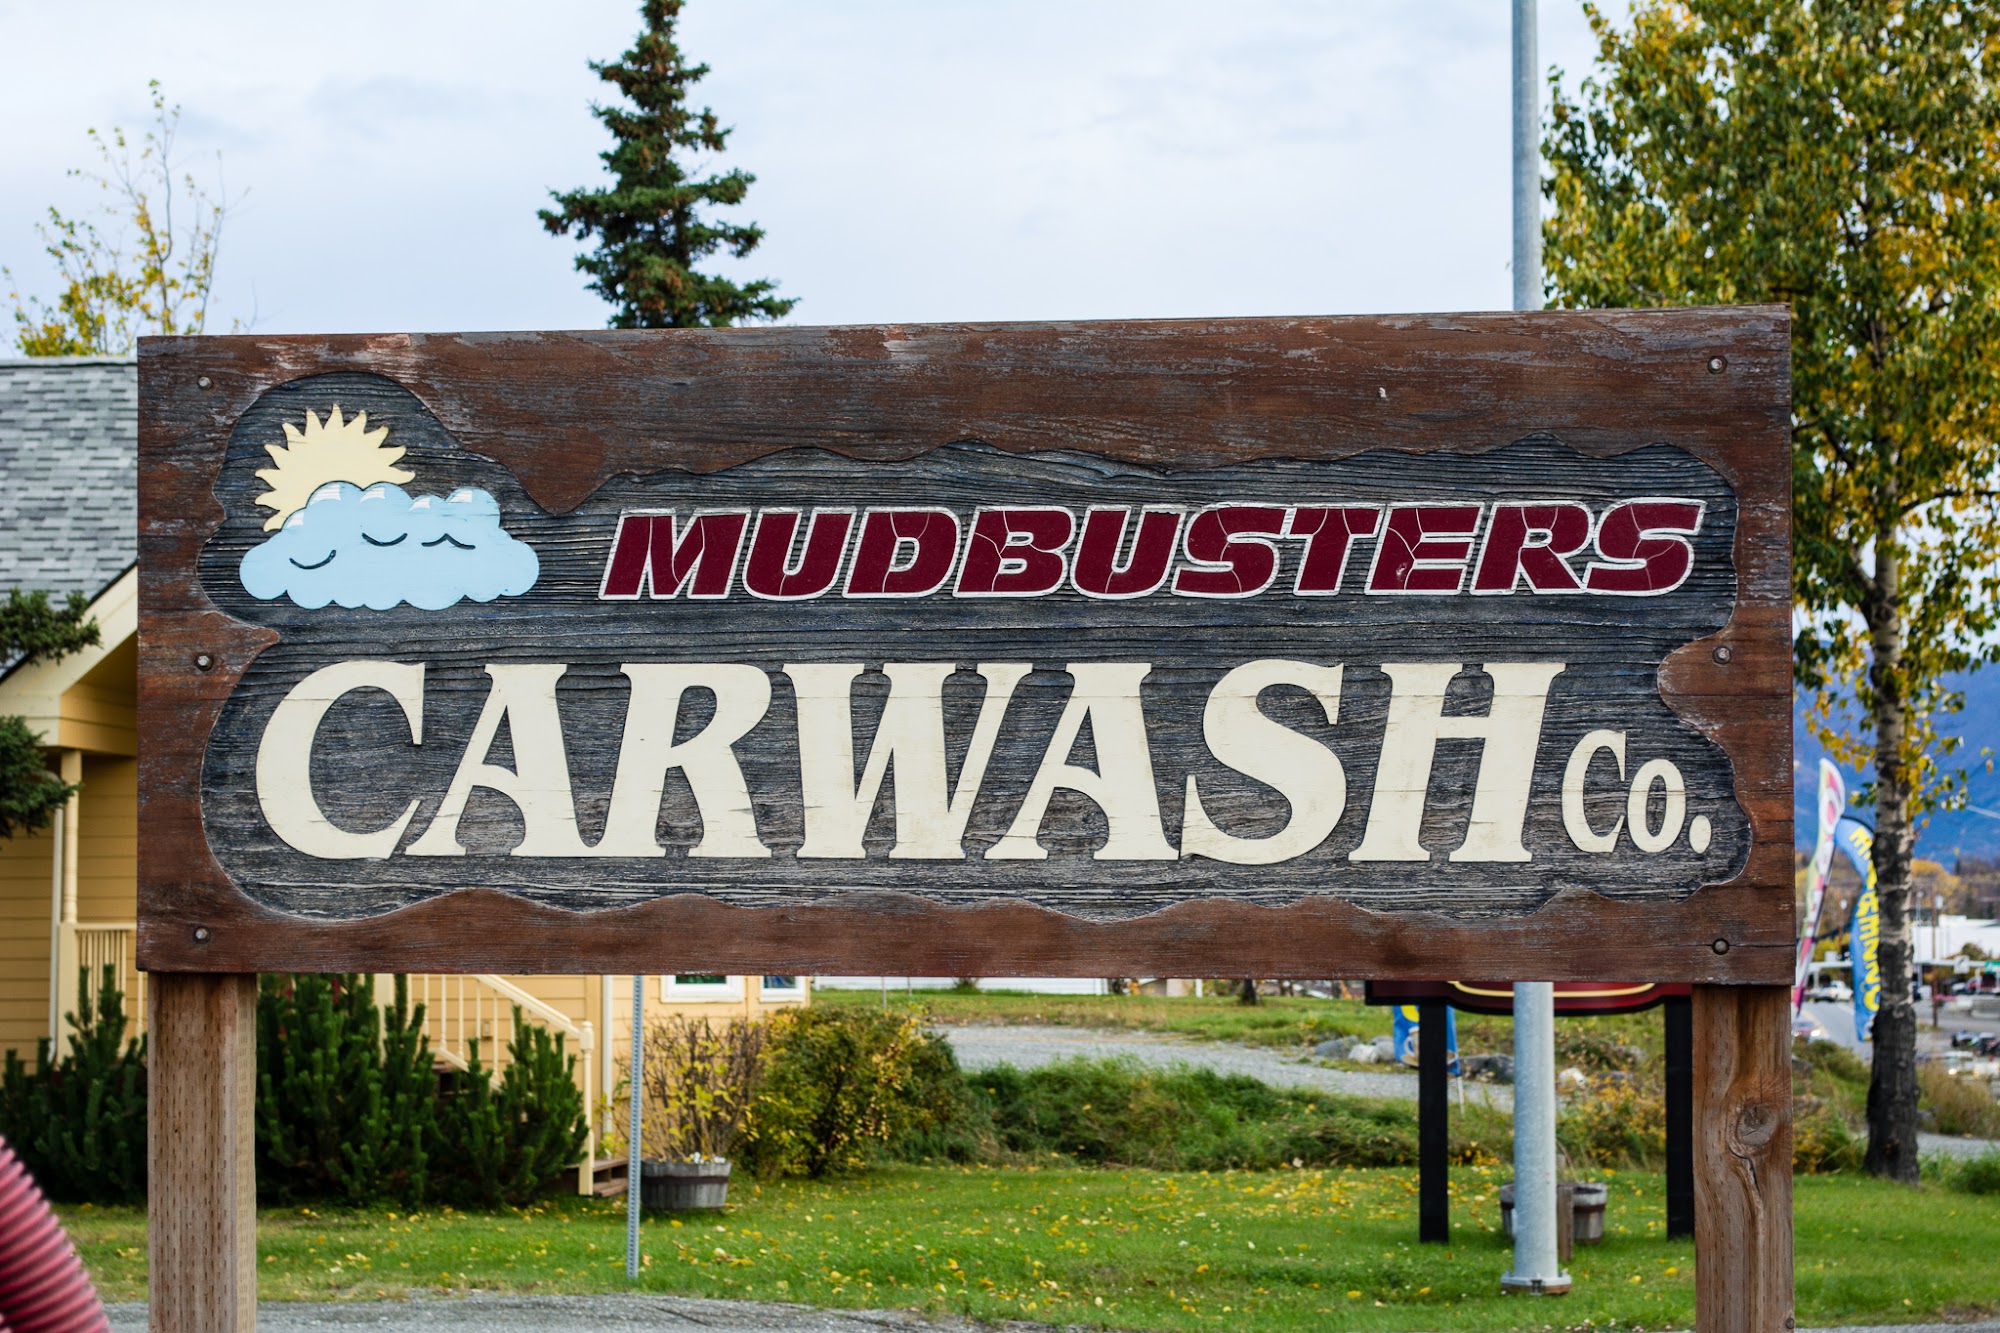 Mudbusters Carwash Co